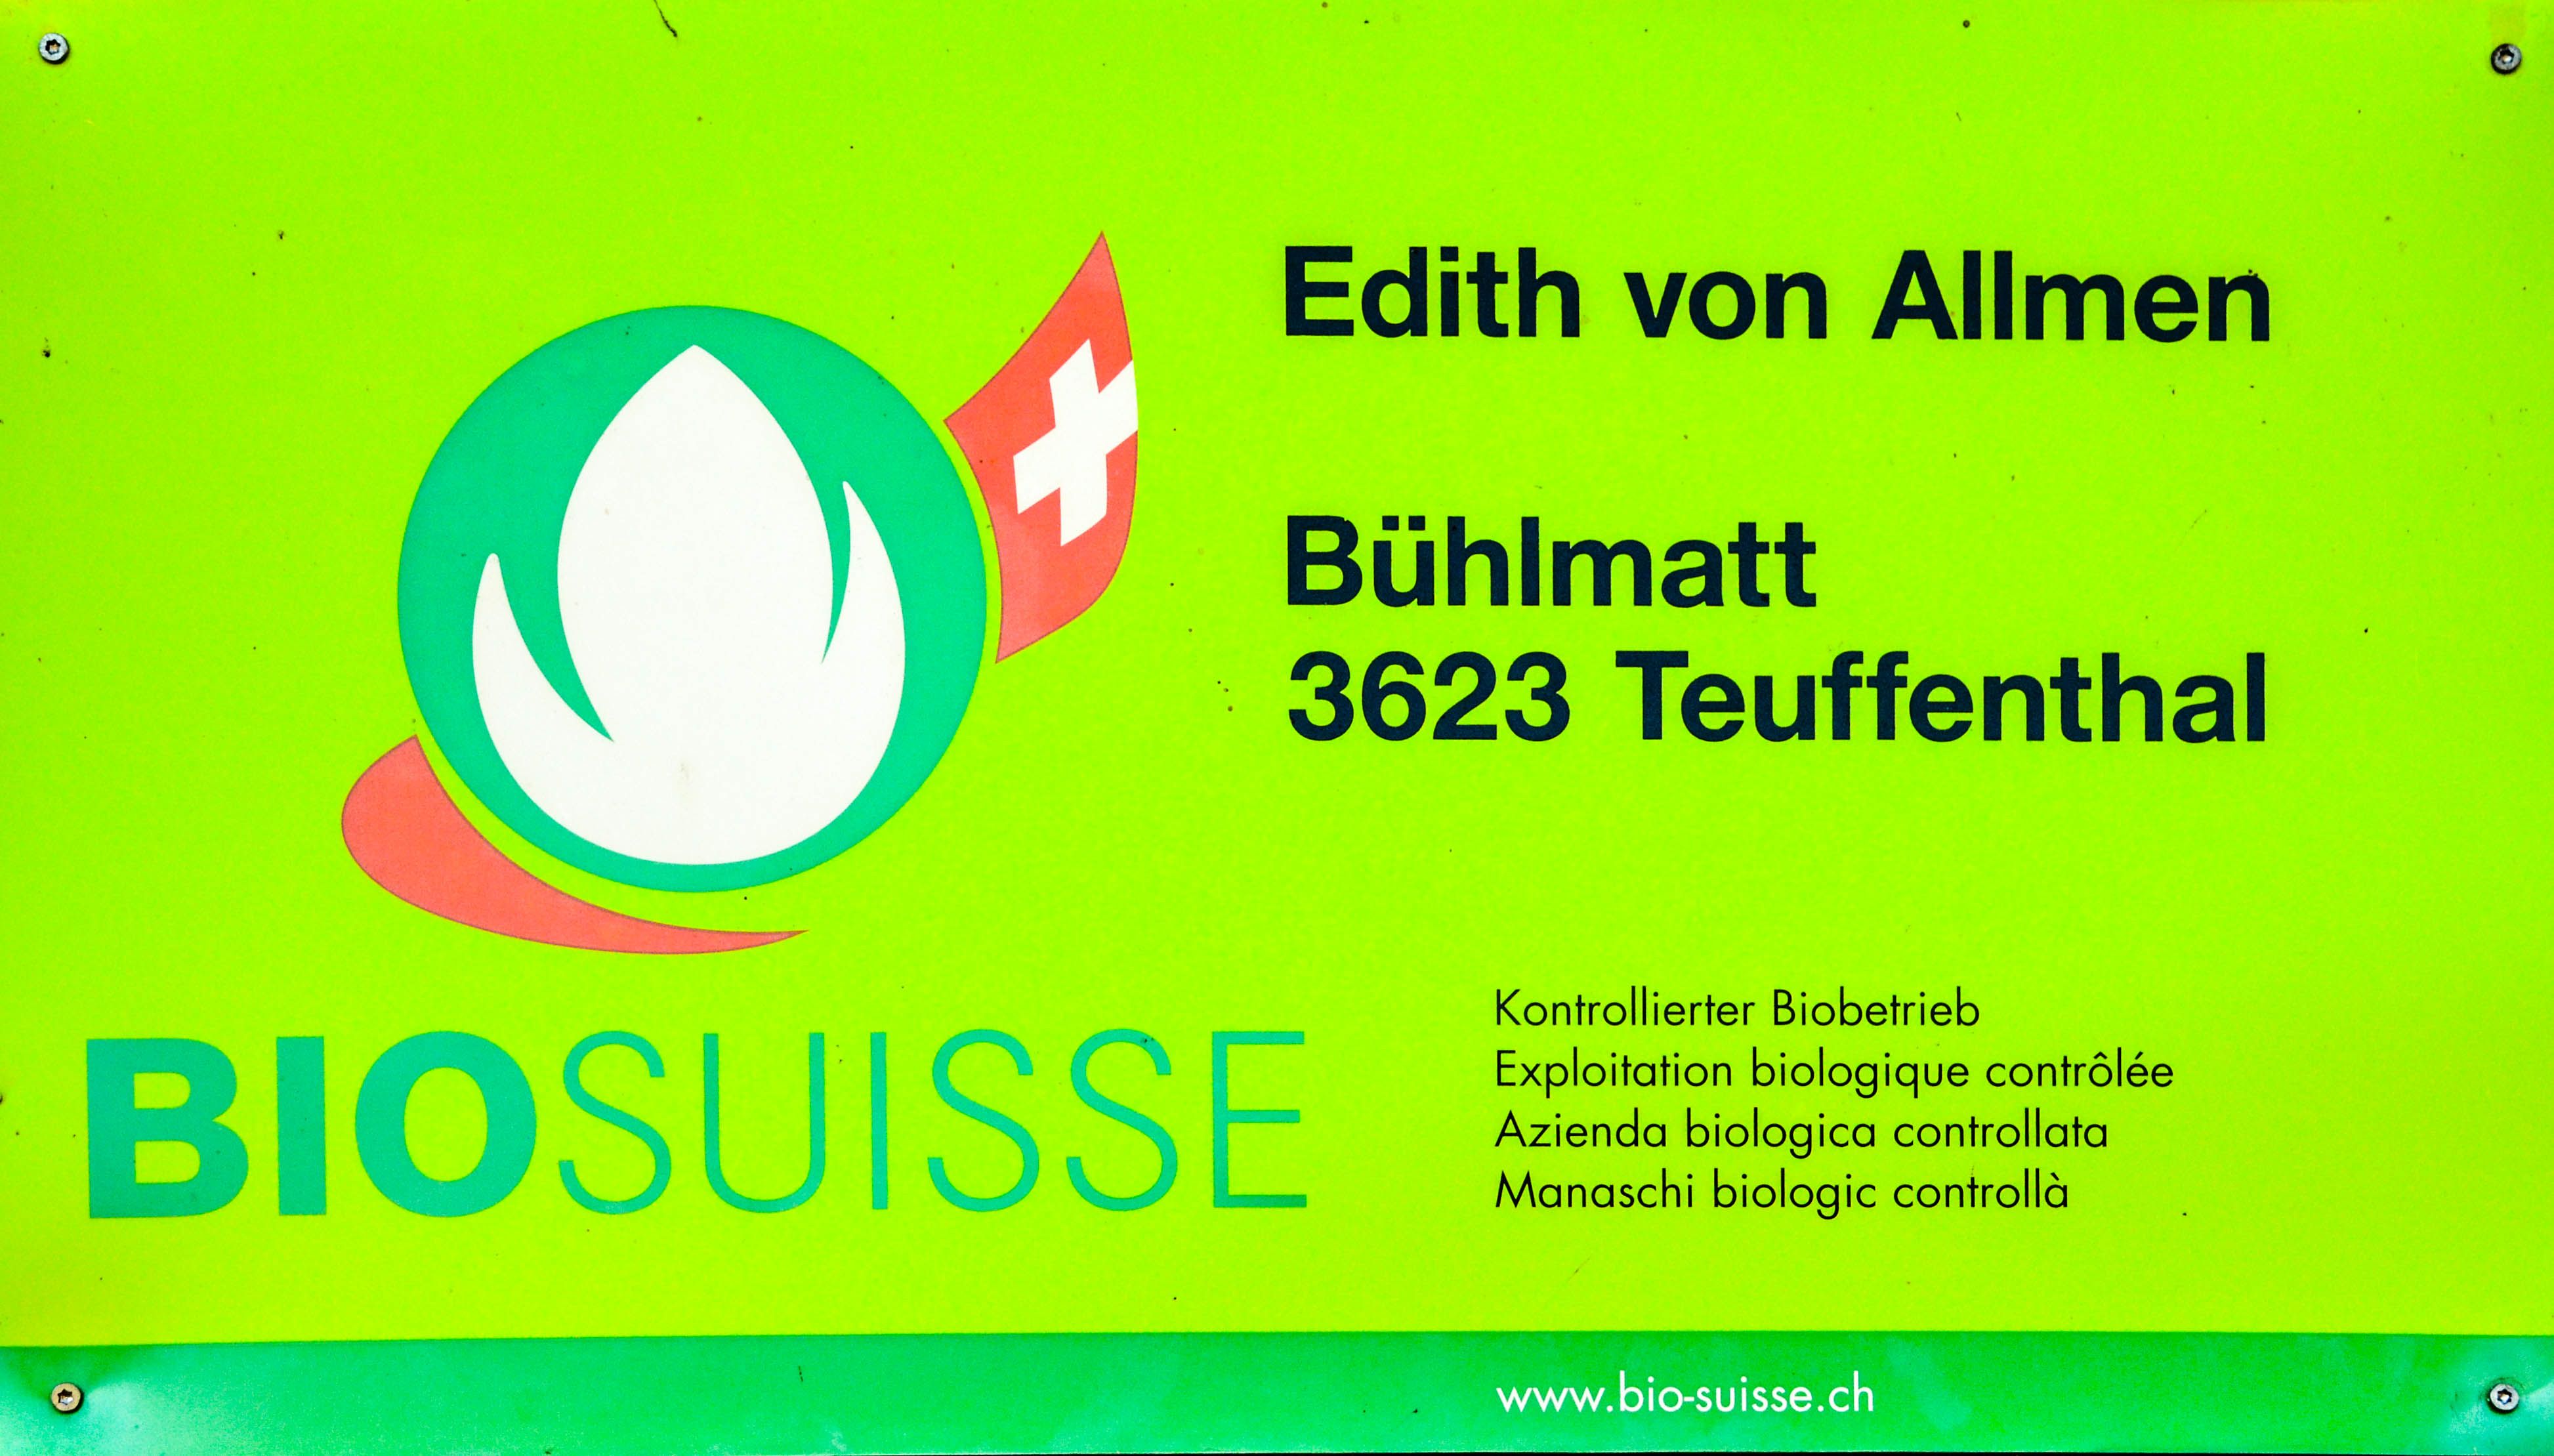 Logo BioSuisse Edith von Allmen